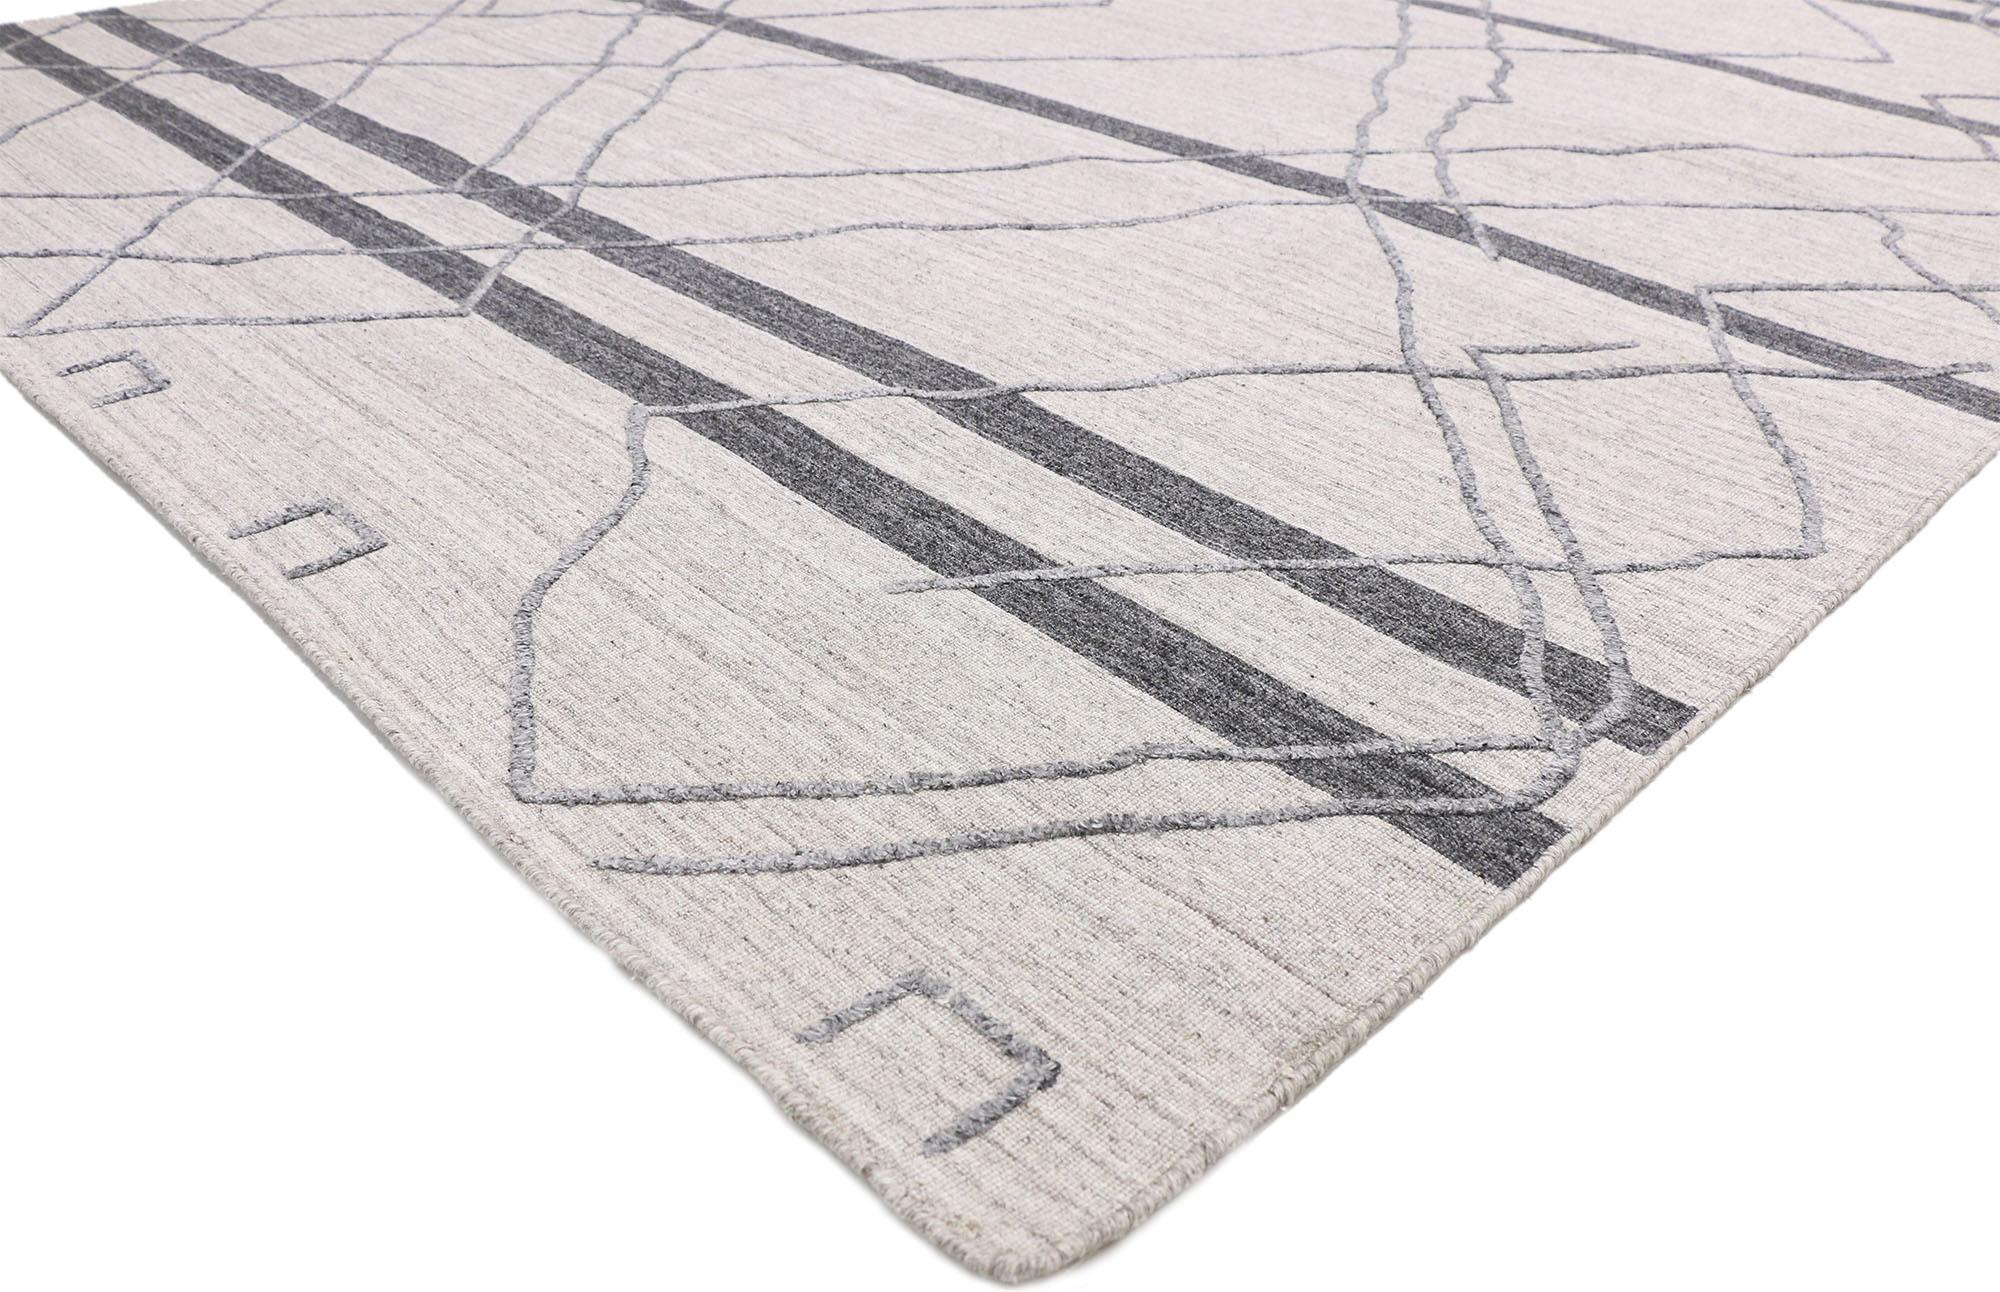 30409, nouveau tapis contemporain gris moderne de style marocain avec design en relief, tapis de texture. Des vibrations hygge chaleureuses rencontrent des motifs tribaux dans ce tapis gris contemporain de style marocain. Fusion dynamique des